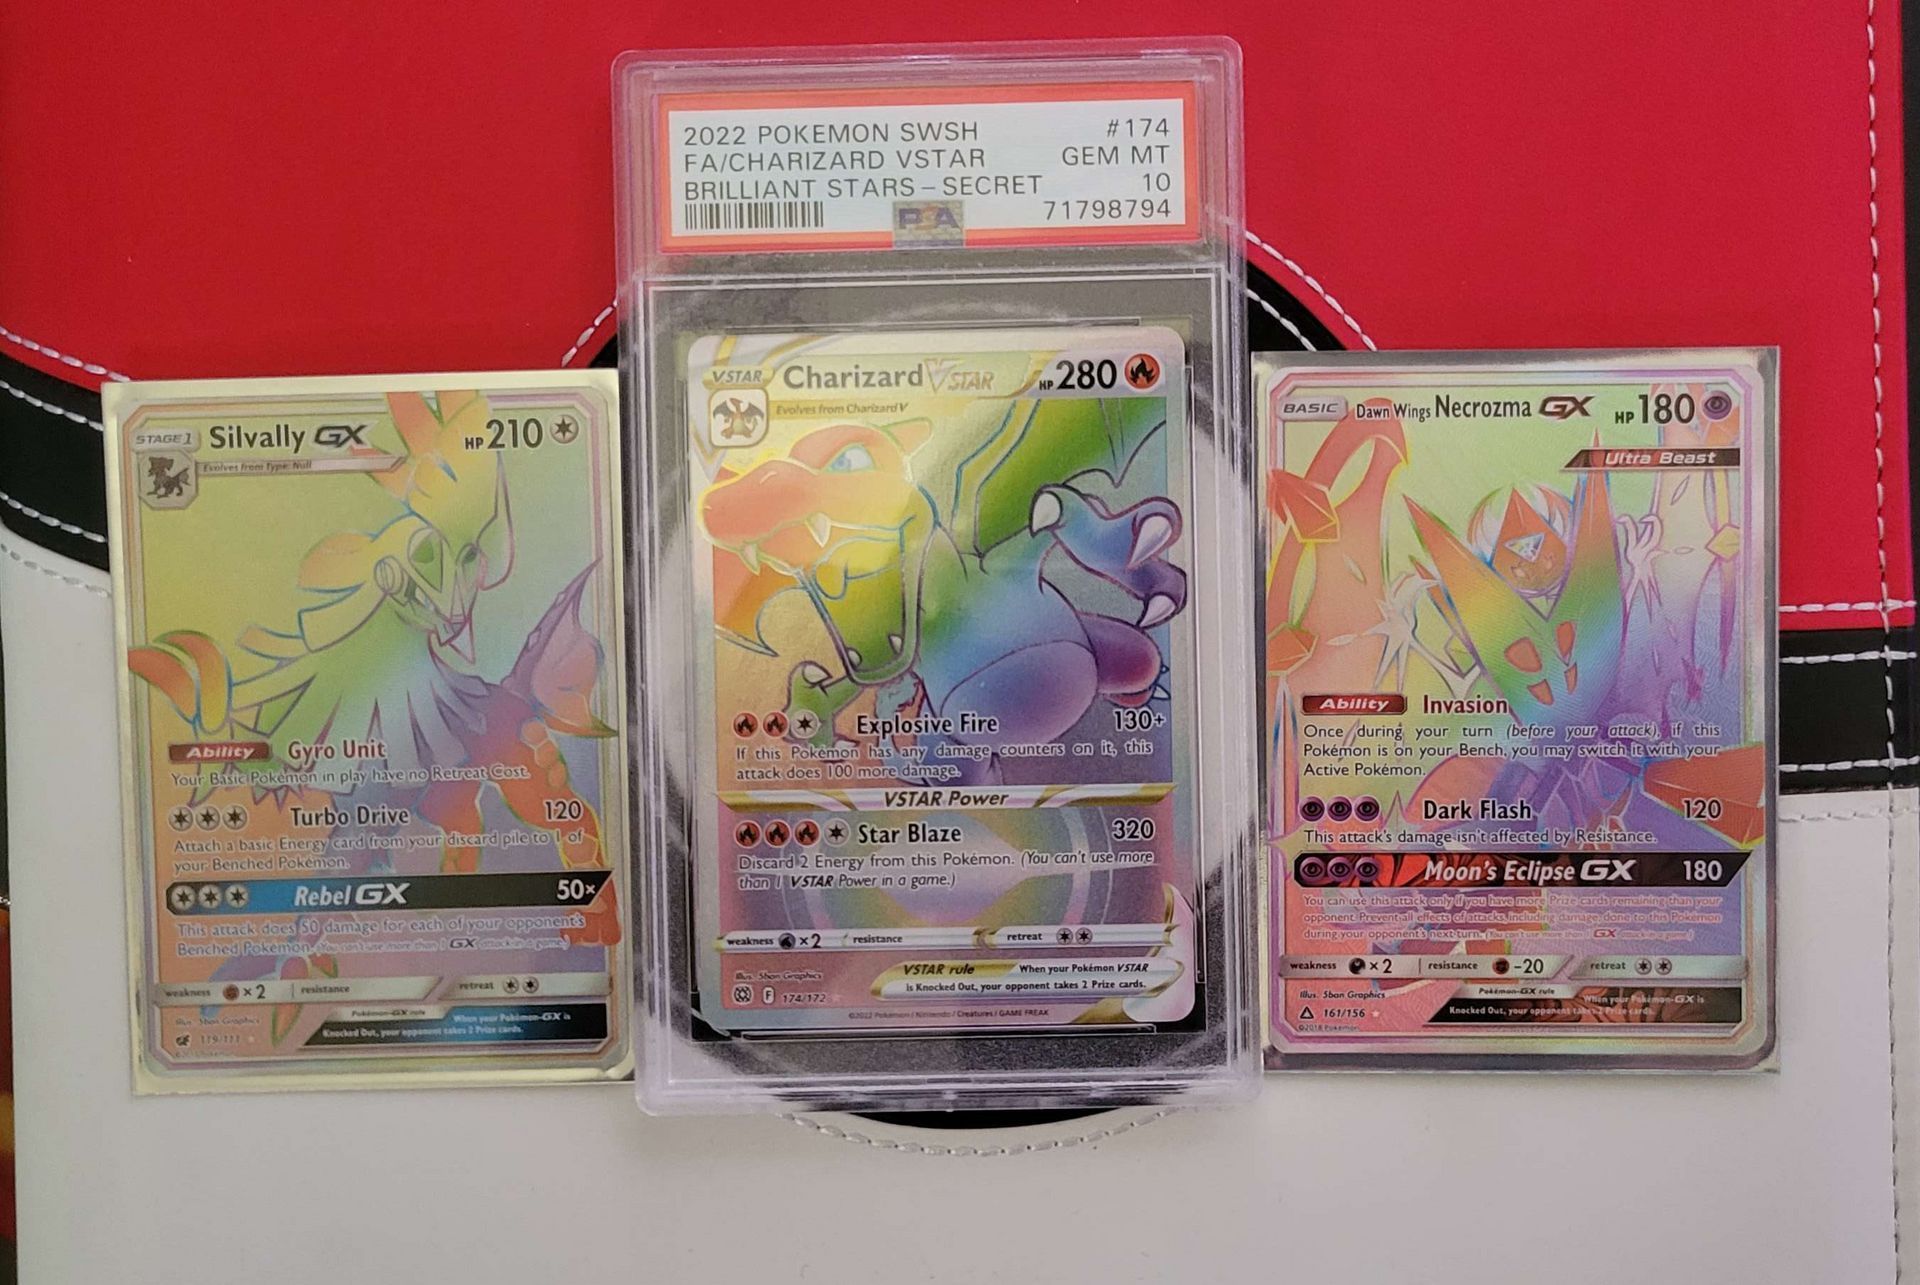 a psa 10 rainbow charizard vstar Pokémon card sitting between two rainbow rare Pokémon cards